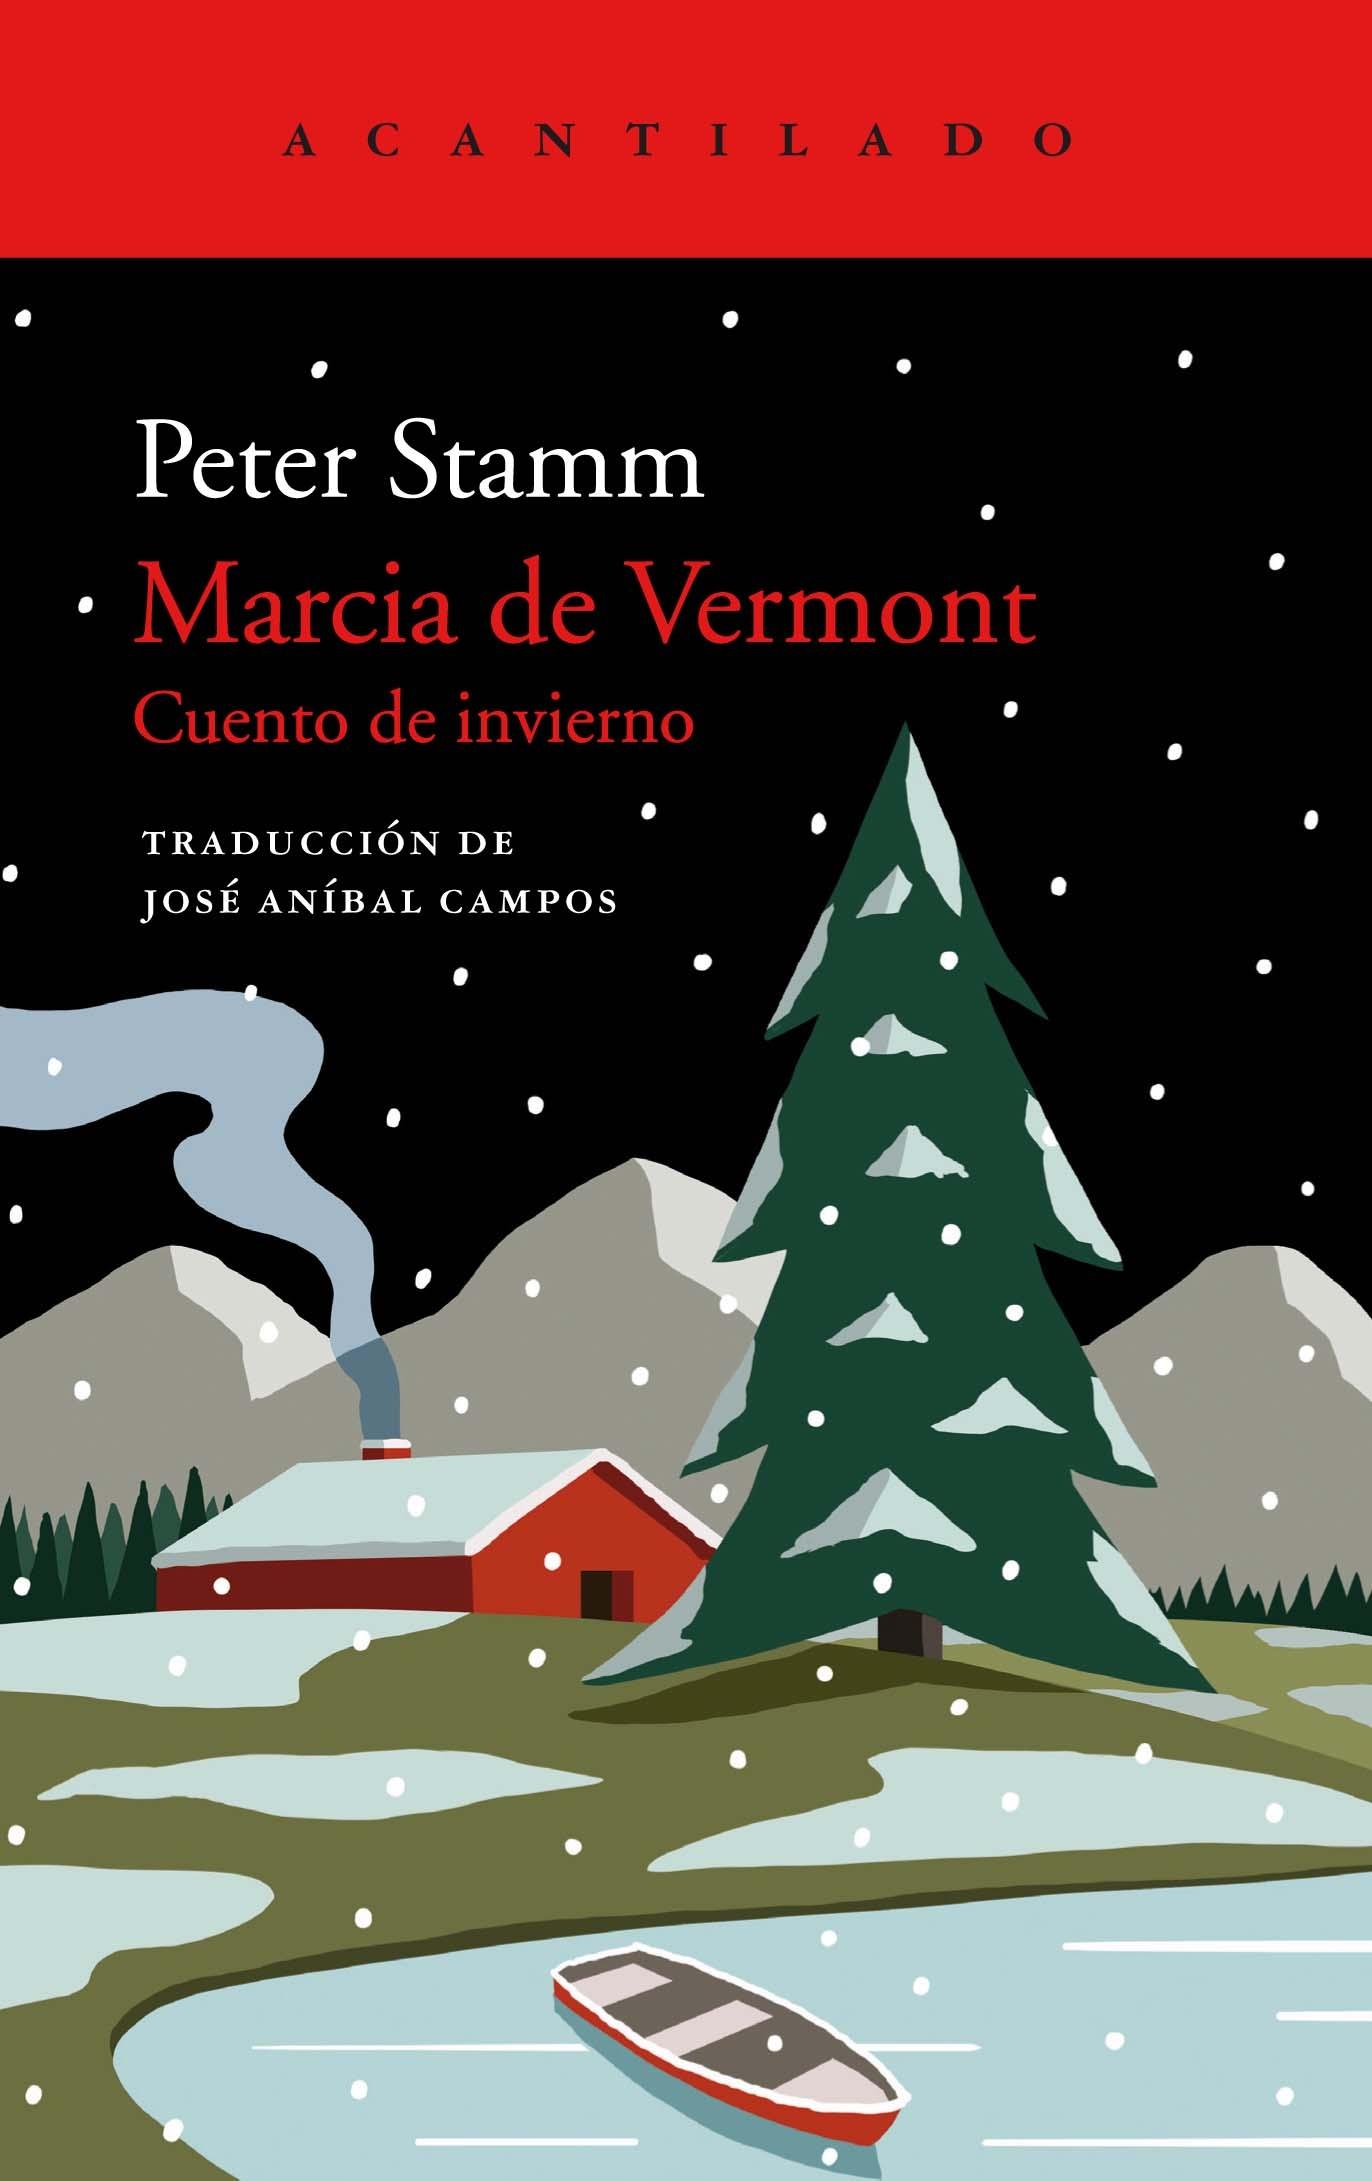 Marcia de Vermont "Cuento de Invierno". 